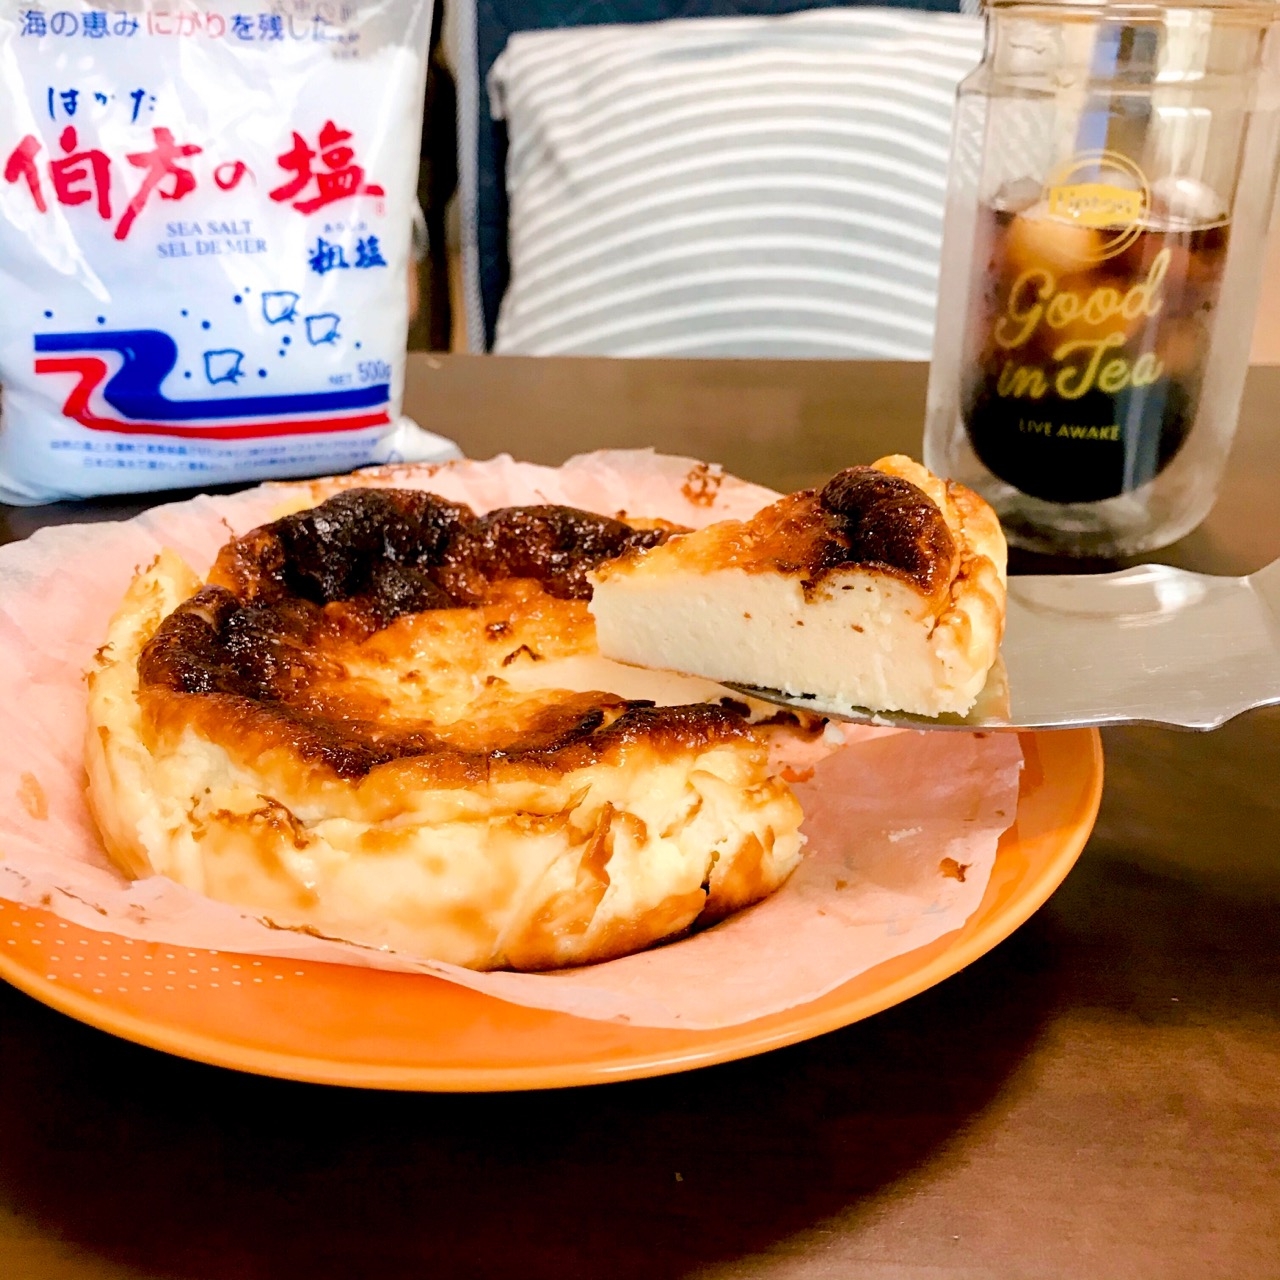 水切り塩ヨーグルトを使ったバスクチーズケーキ風 レシピ掲載のお知らせ Eatpick